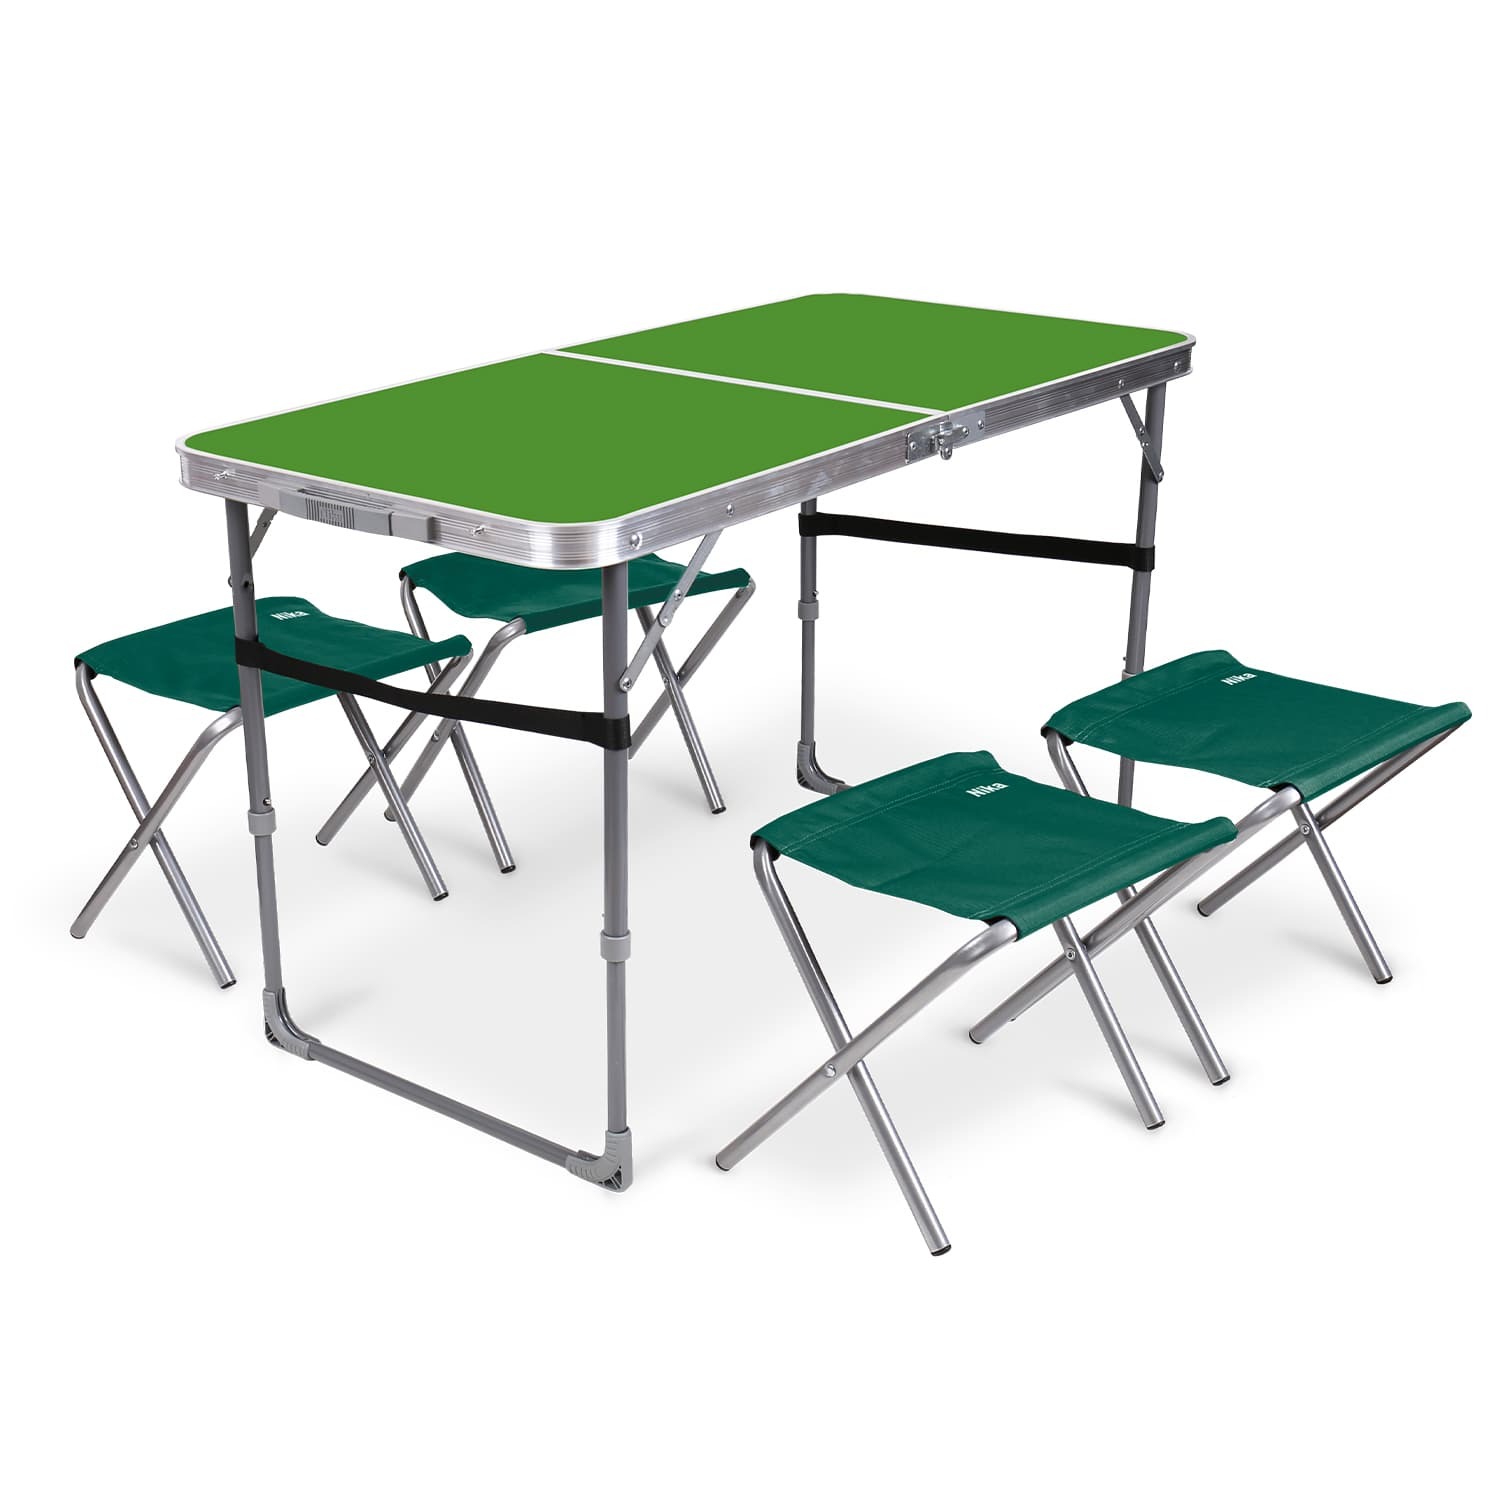 Комплект складной мебели Ника зеленый стол с изумрудными табуретами 5 предметов складной нож sitivien st301 зеленый